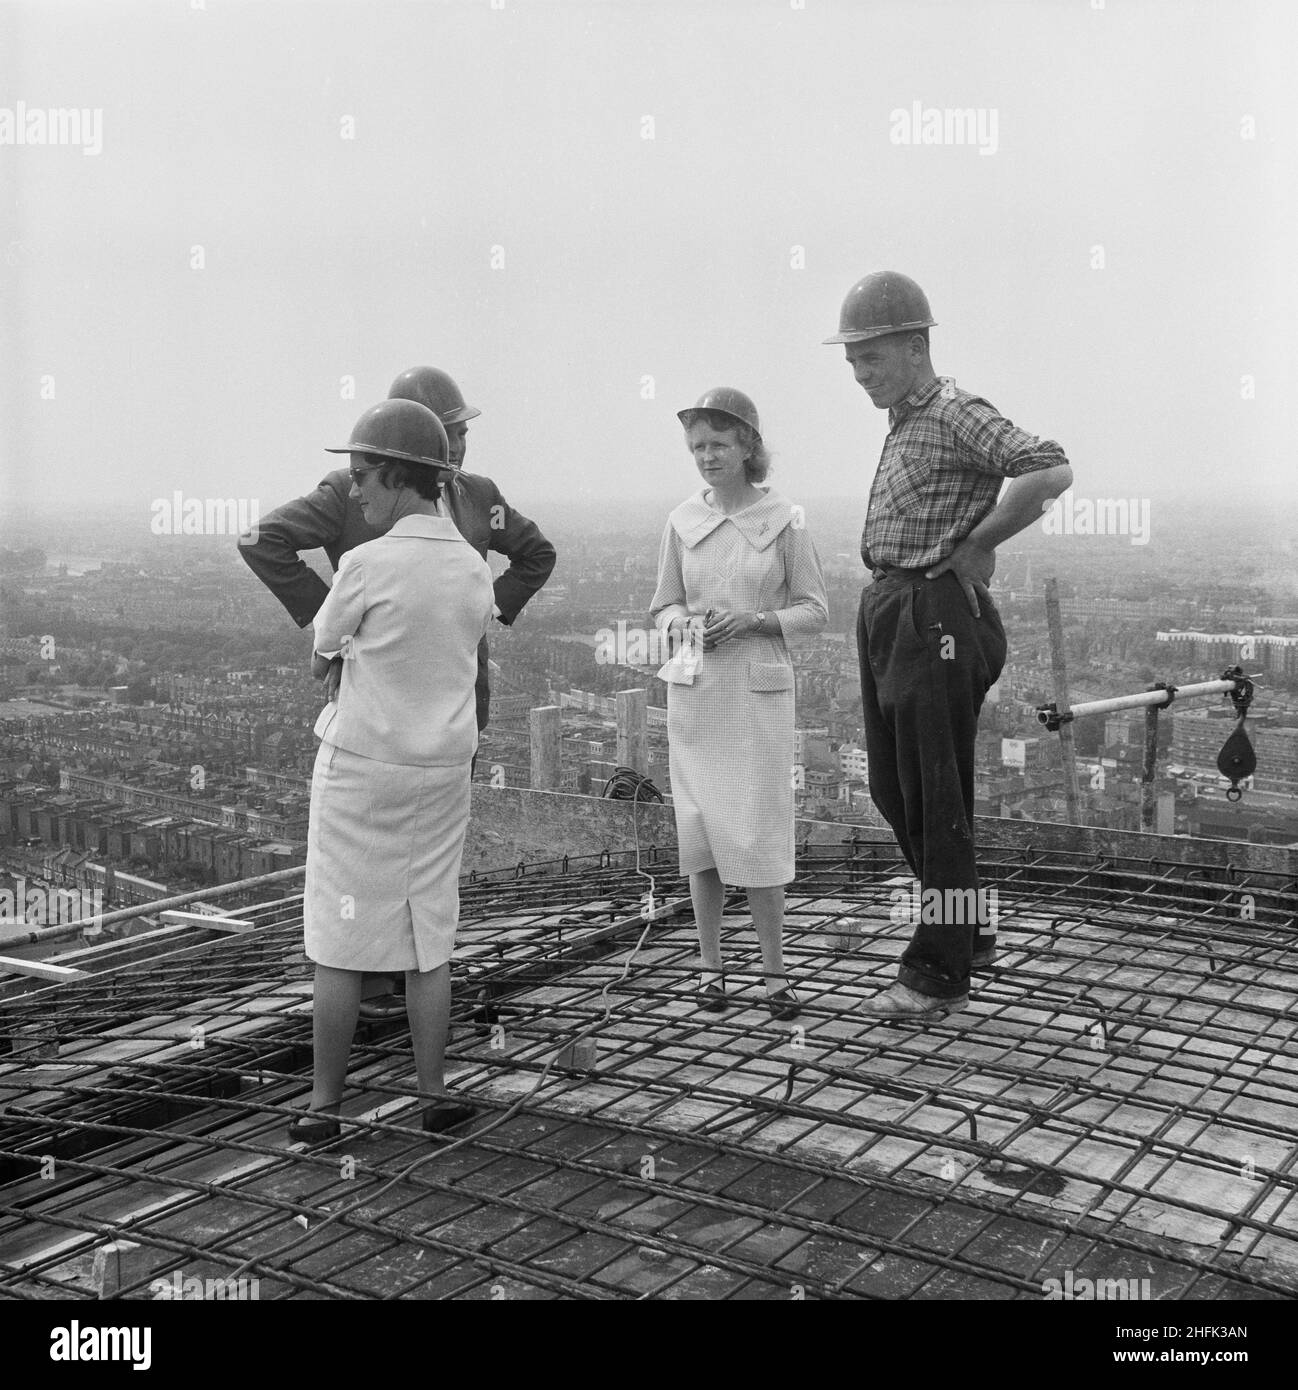 Empress state Building, Lillie Road, Earl's Court, Hammersmith e Fulham, Londra, 03/07/1961. Due donne con un'operatrice di costruzioni e un manager si sono riunite sul tetto dell'Empress state Building, per vedere il getto finale di calcestruzzo. Laing costruì le fondamenta e la struttura in cemento armato dell'edificio, i lavori iniziarono nel novembre 1959 e durarono fino al luglio 1961. Il gruppo è stato riunito sul tetto per l'orologio il getto finale di calcestruzzo per completare il progetto. Foto Stock